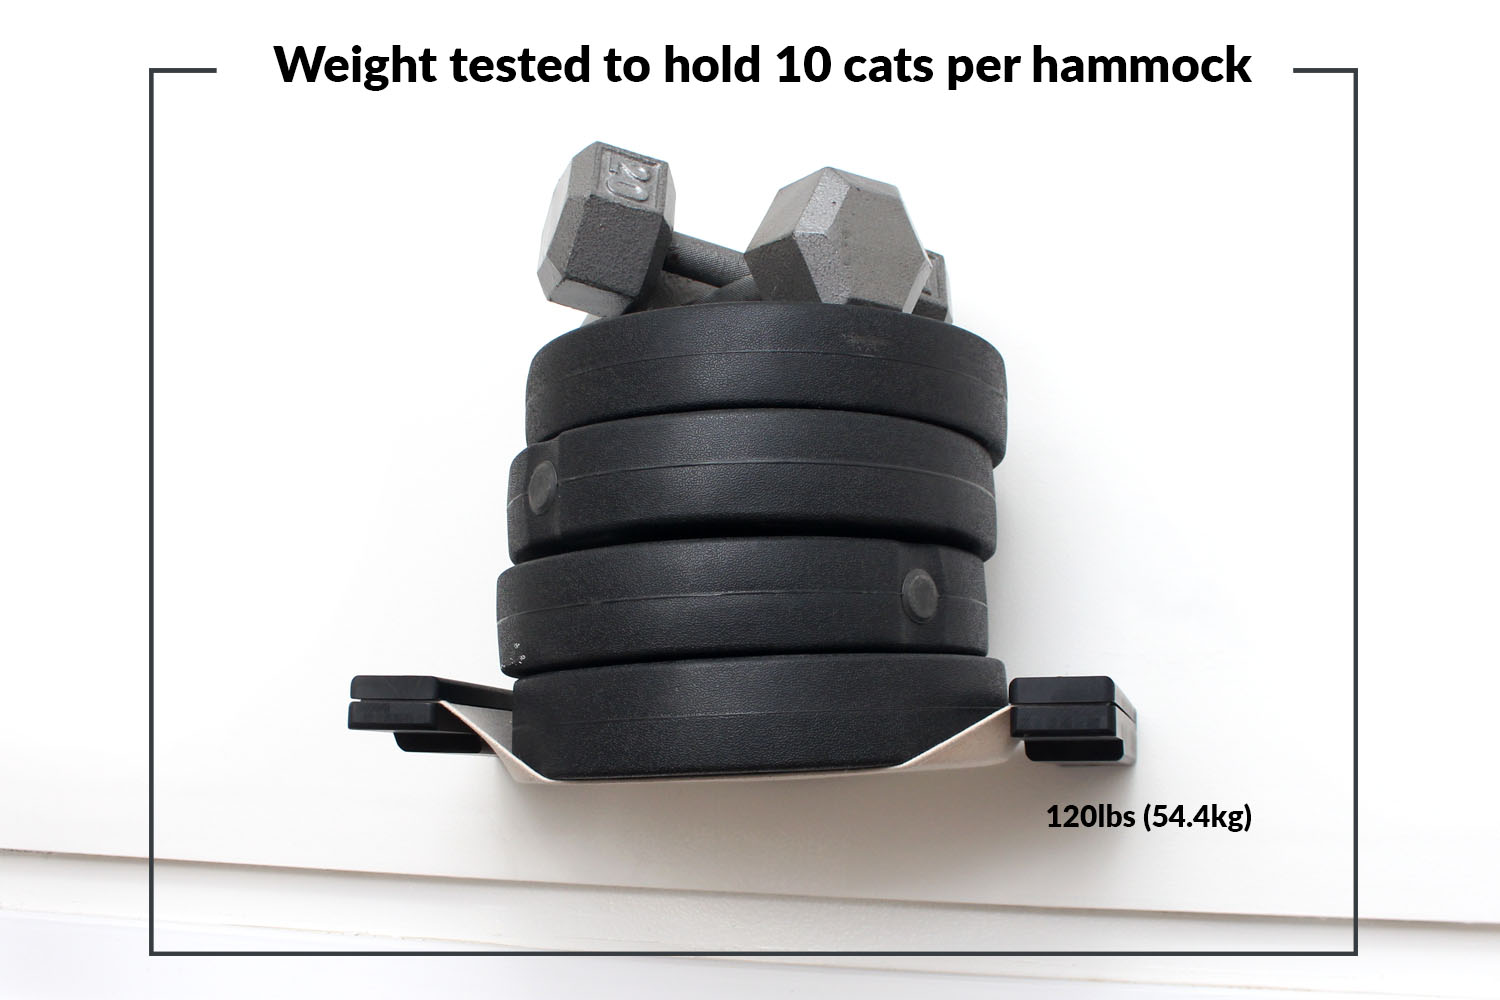 weights on a hammock